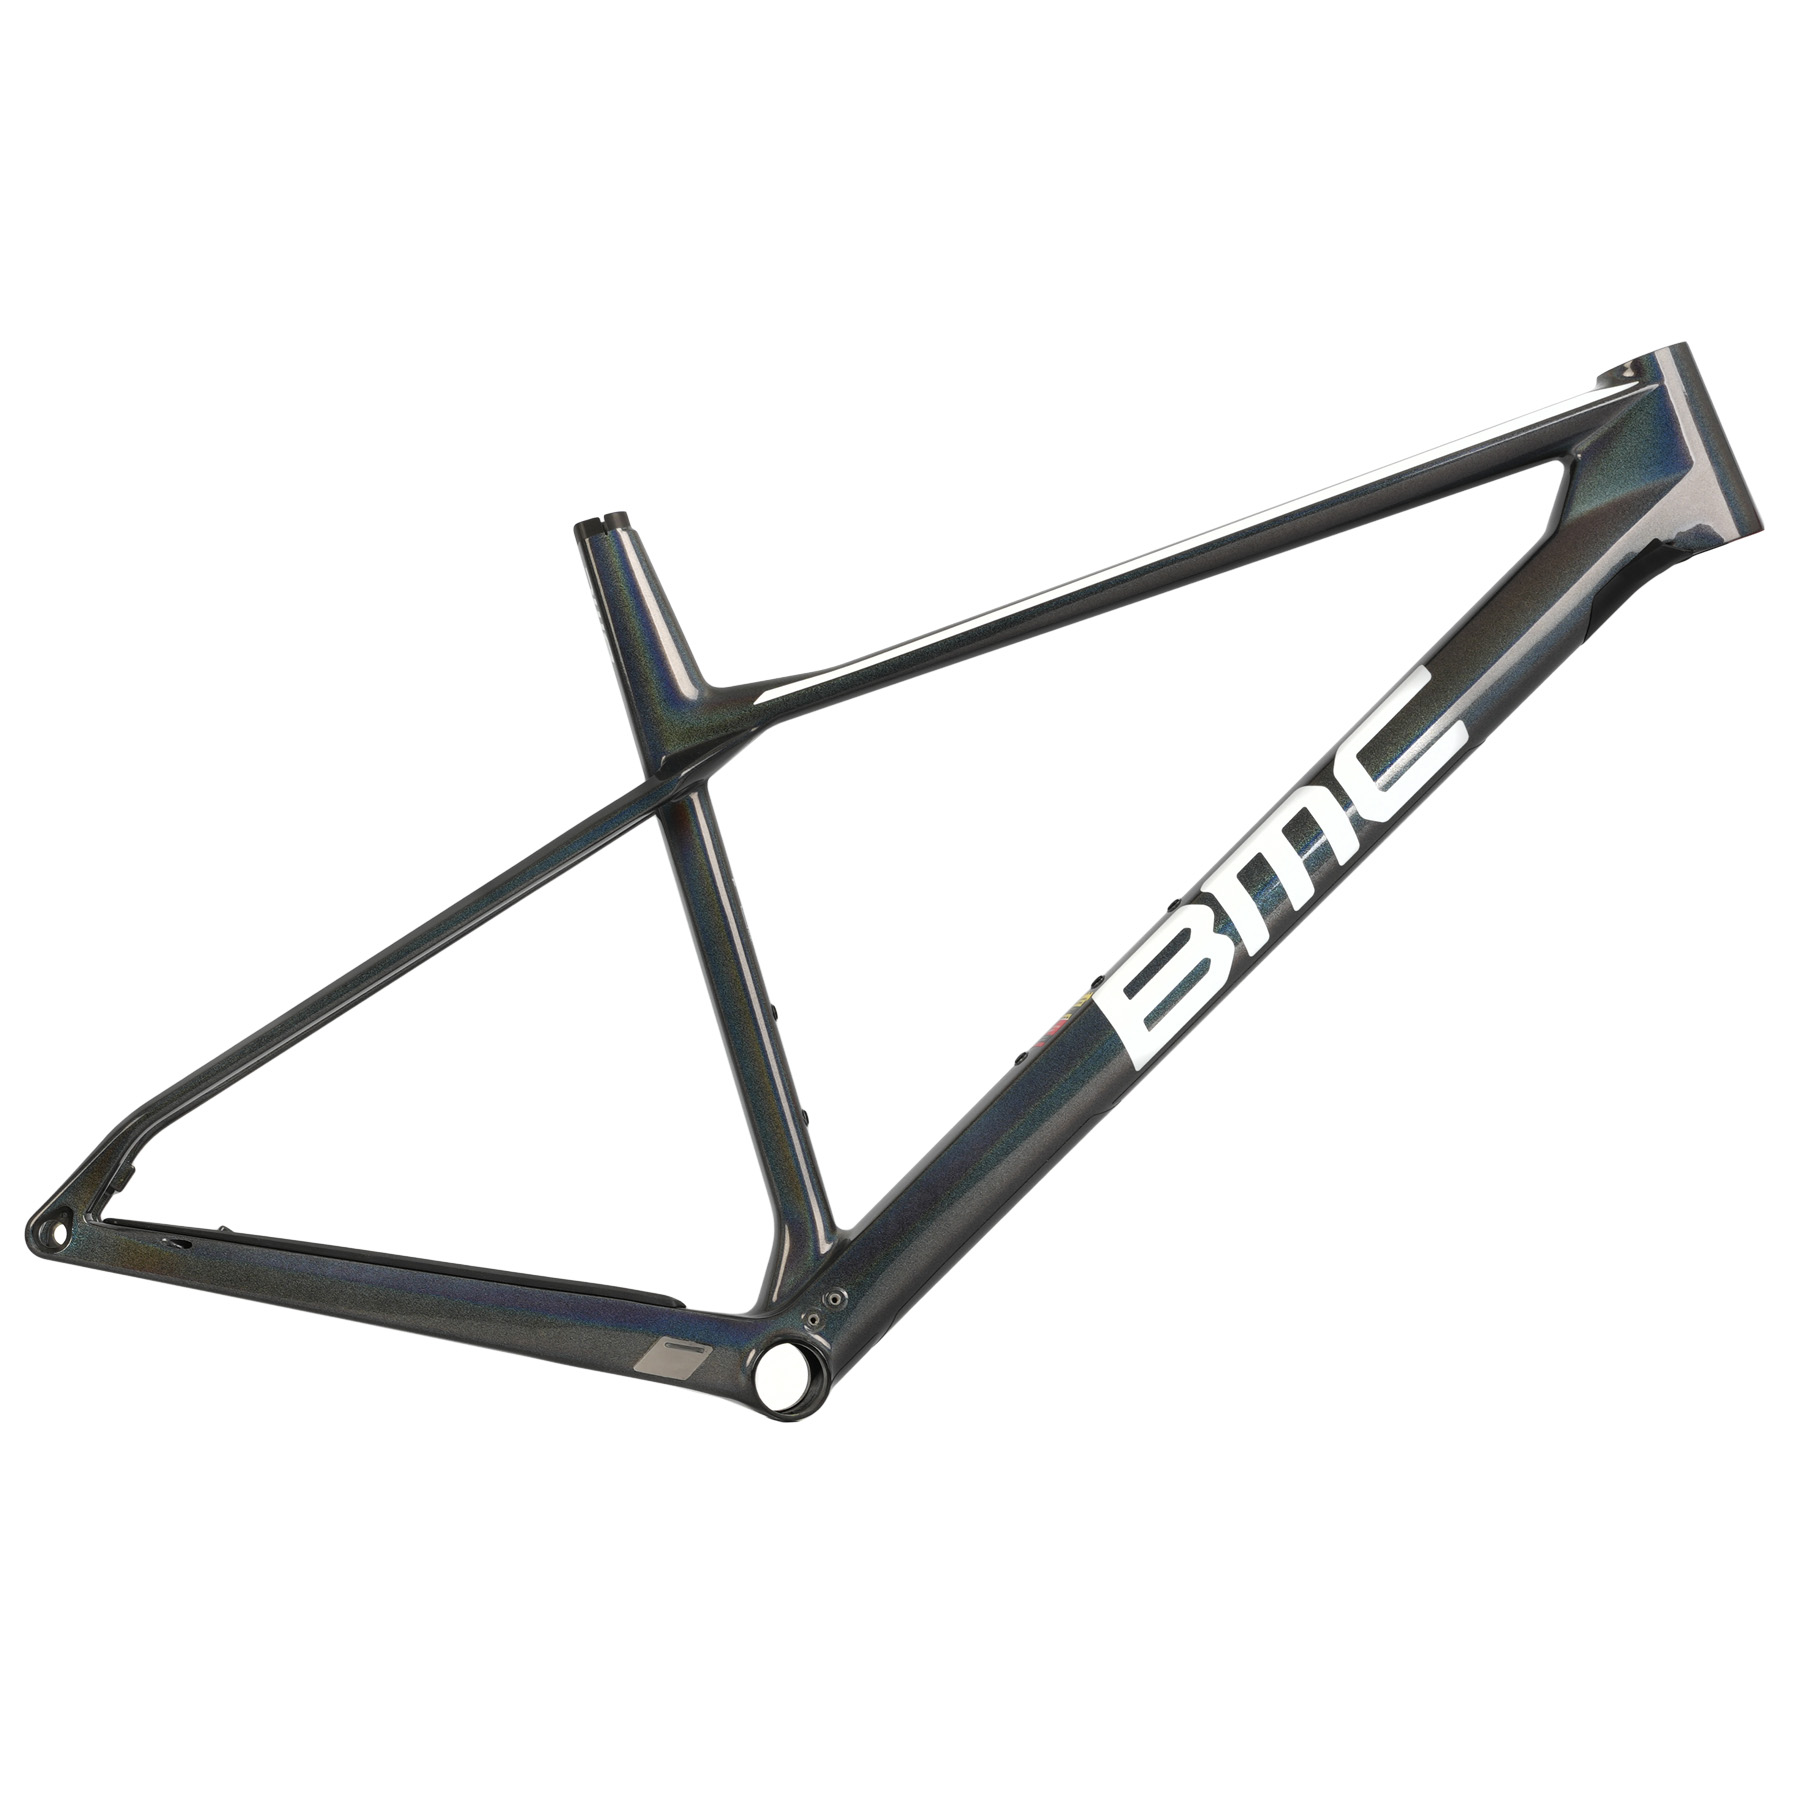 Productfoto van BMC TWOSTROKE 01 - Carbon Frame - 2023 - iridium/white/black